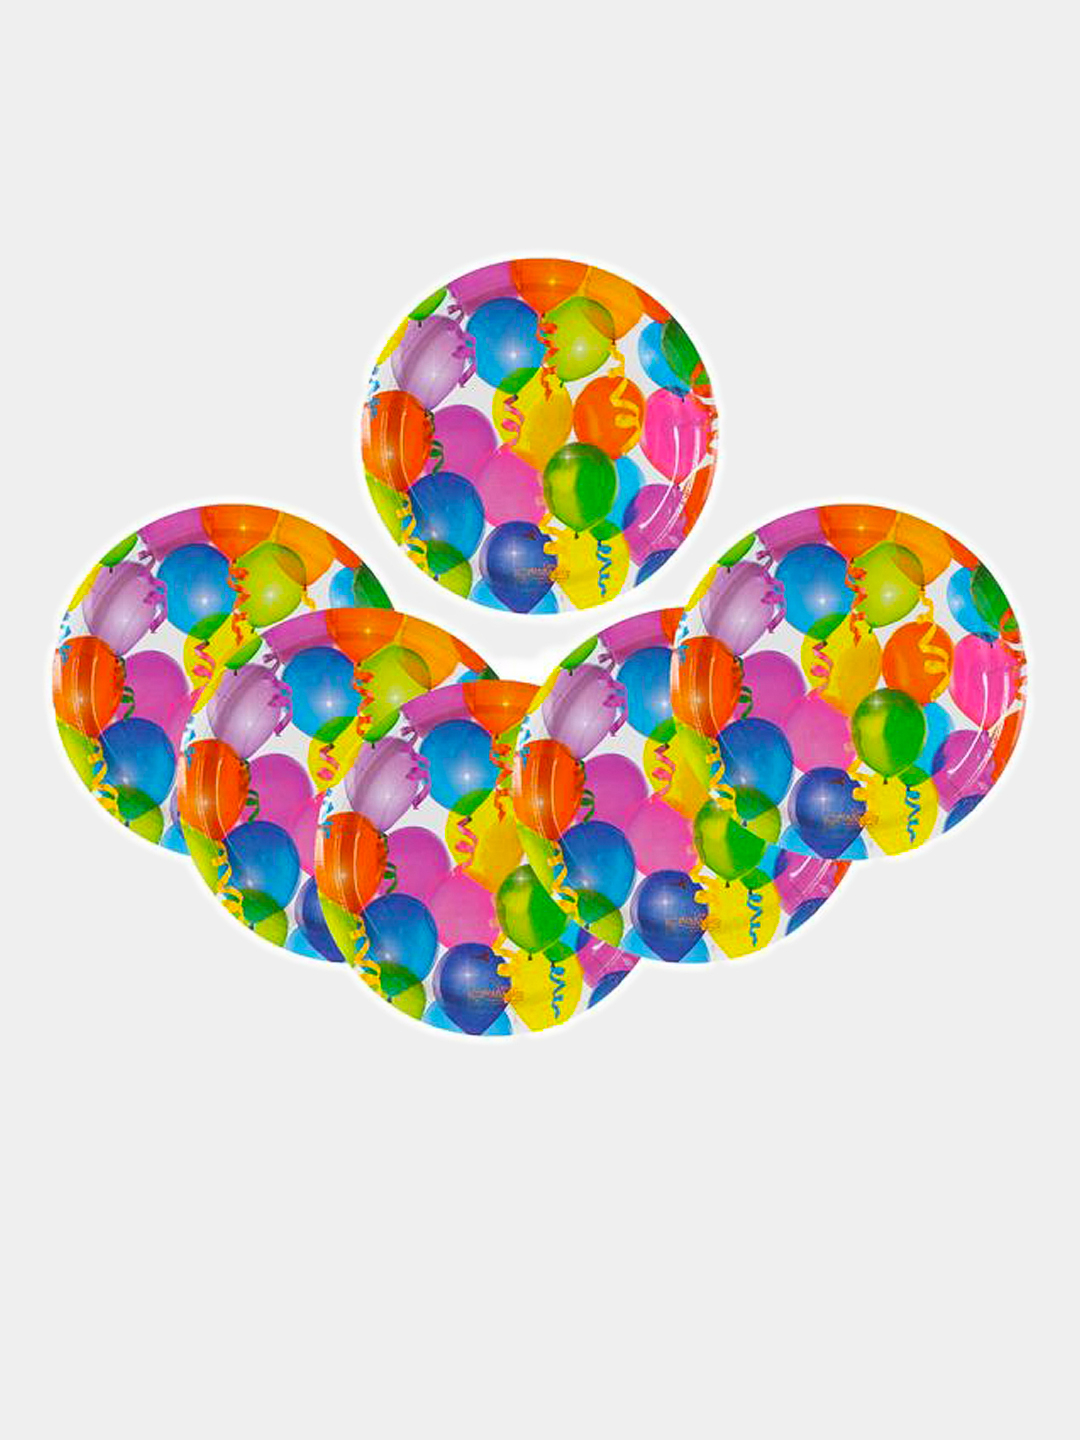 Шарики 18 см. Тарелка бумажная «воздушные шарики», 18 см. Тарелка бумажная 230 мм "шары". Воздушные шары на тарелке. Тарелка для шариков.